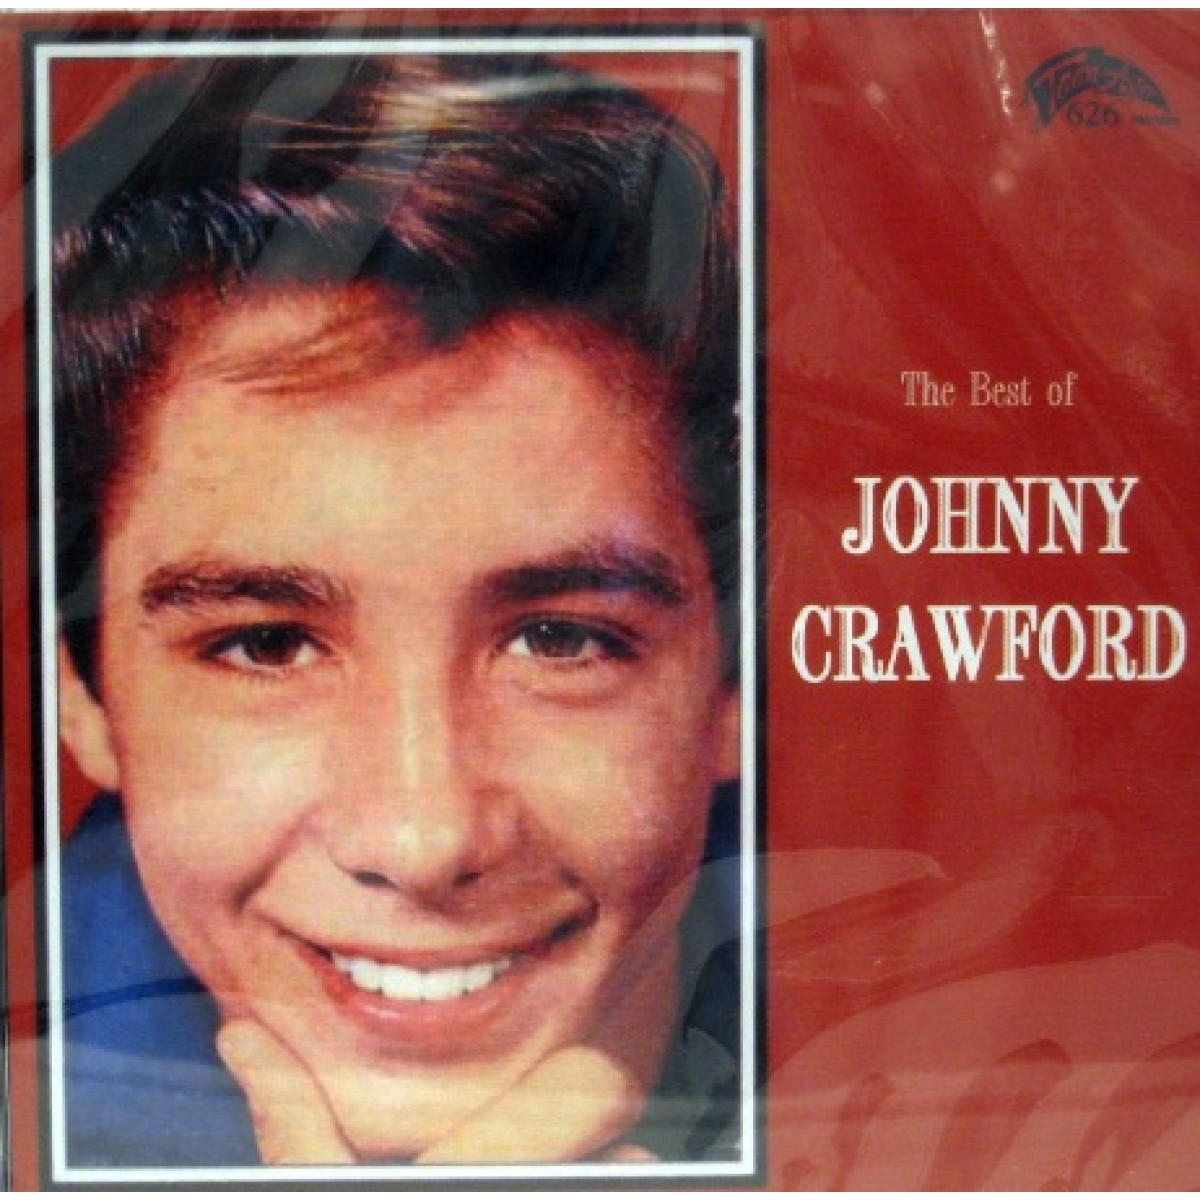 images-of-johnny-crawford. images of johnny crawford. 